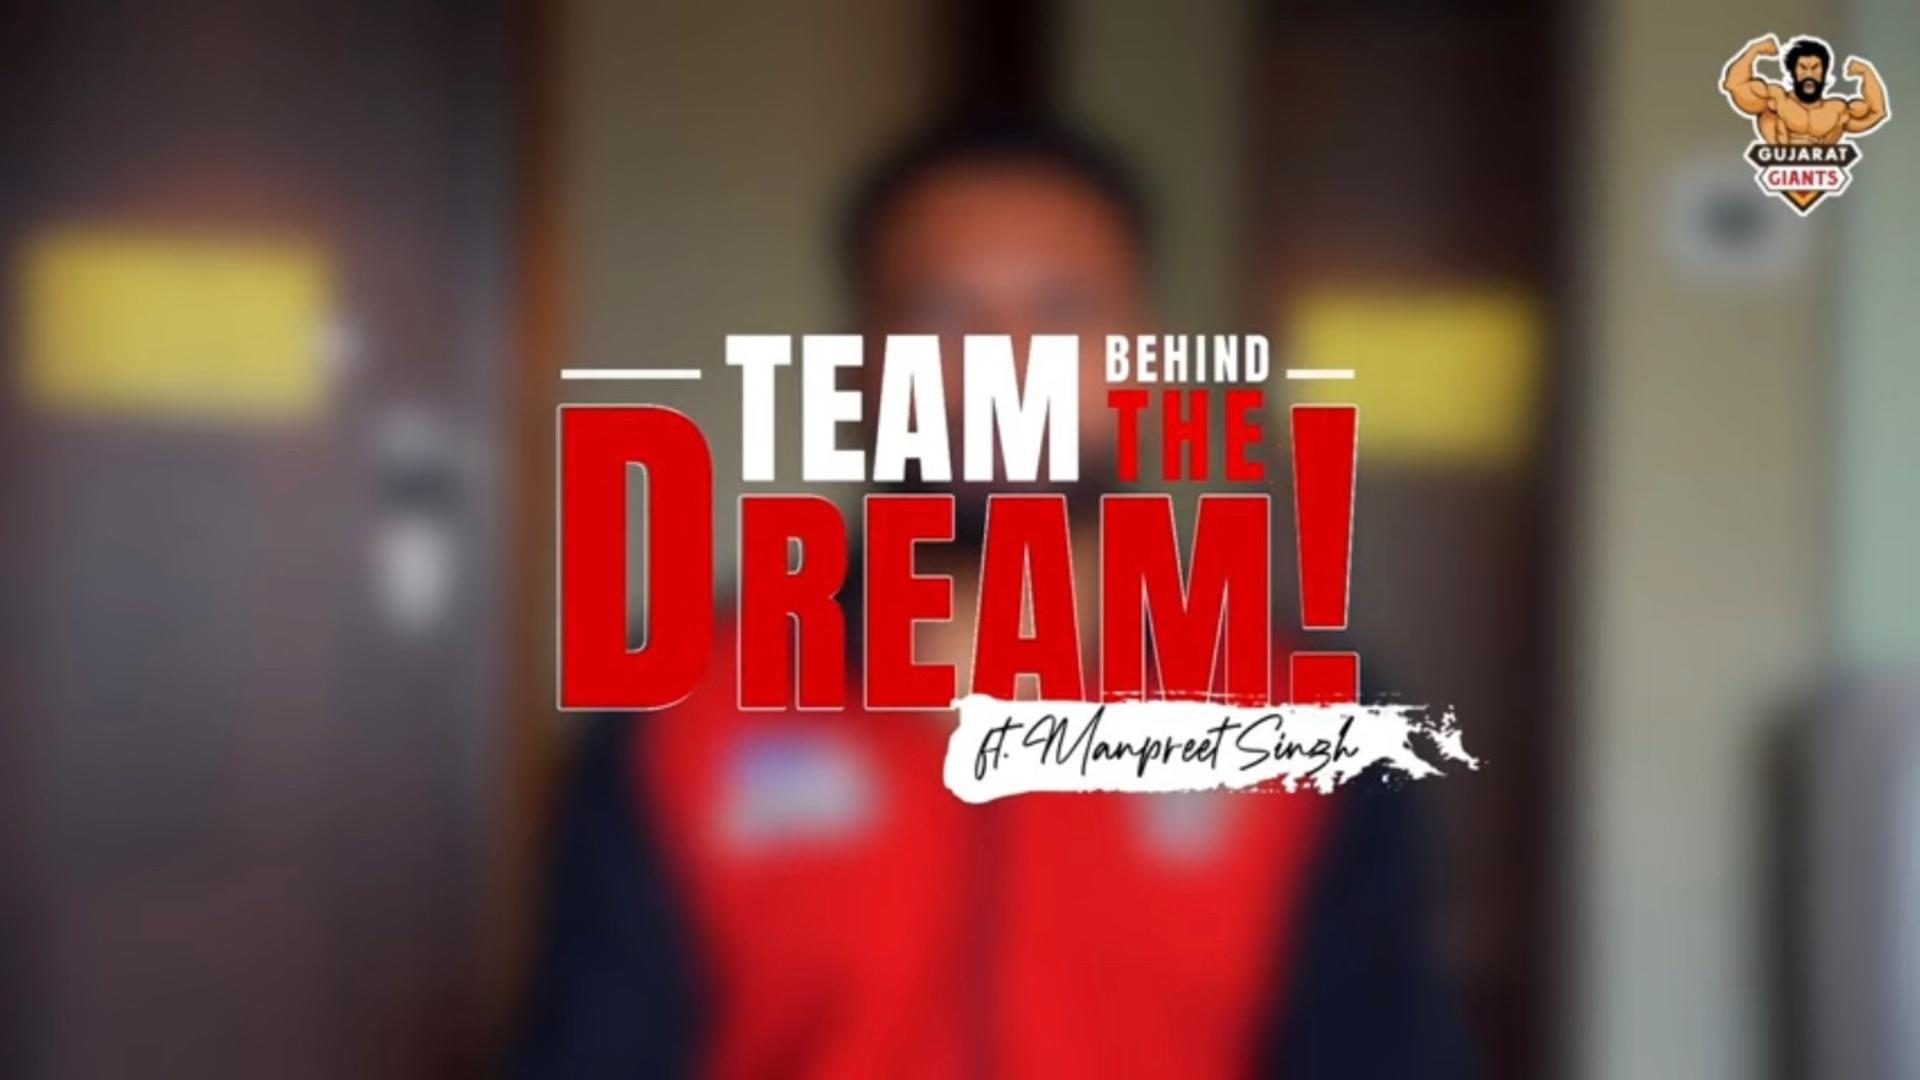 Team Behind the Dream ft. Manpreet Singh!